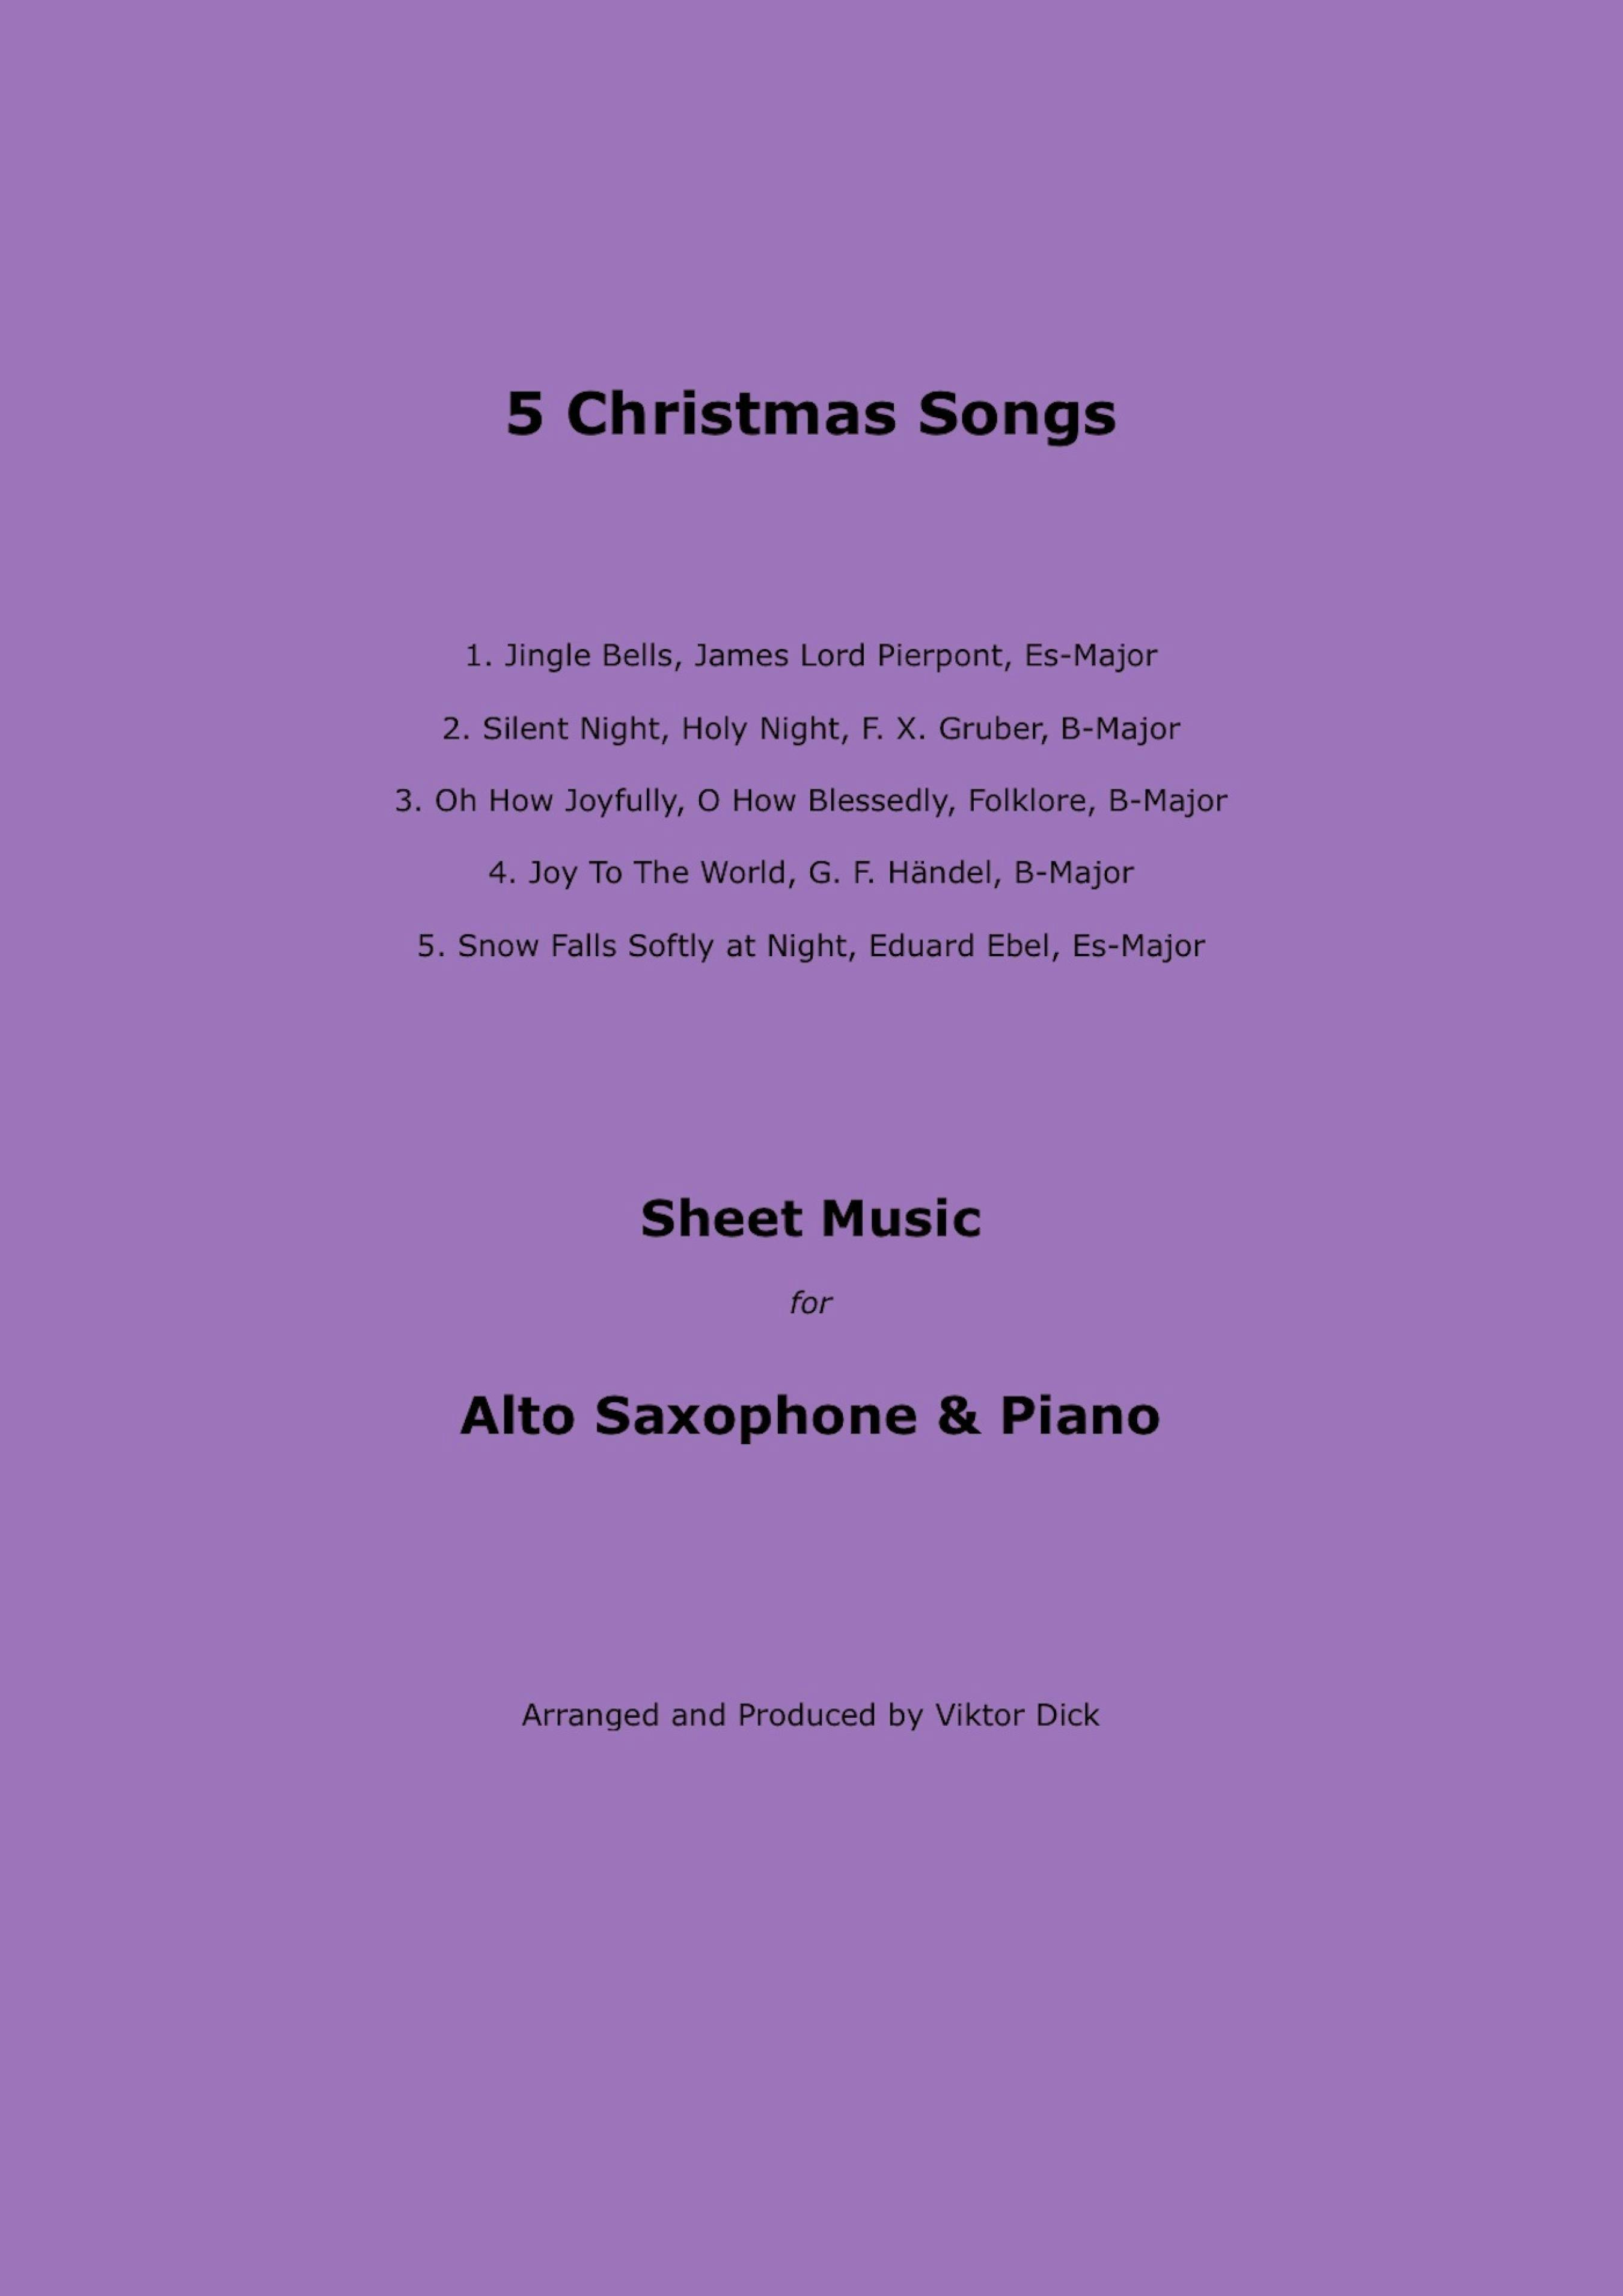 5 Christmas Songs: Sheet Music for Alto Saxophone & Piano | E-book